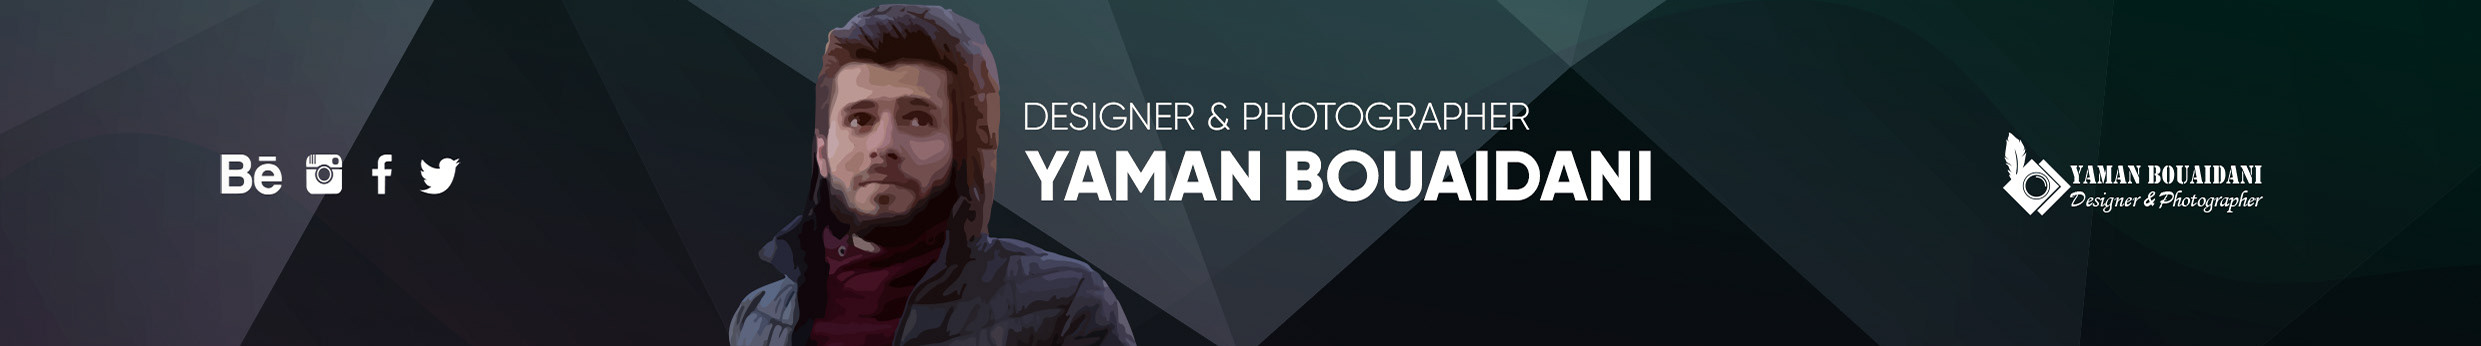 Yaman Bouaidani's profile banner